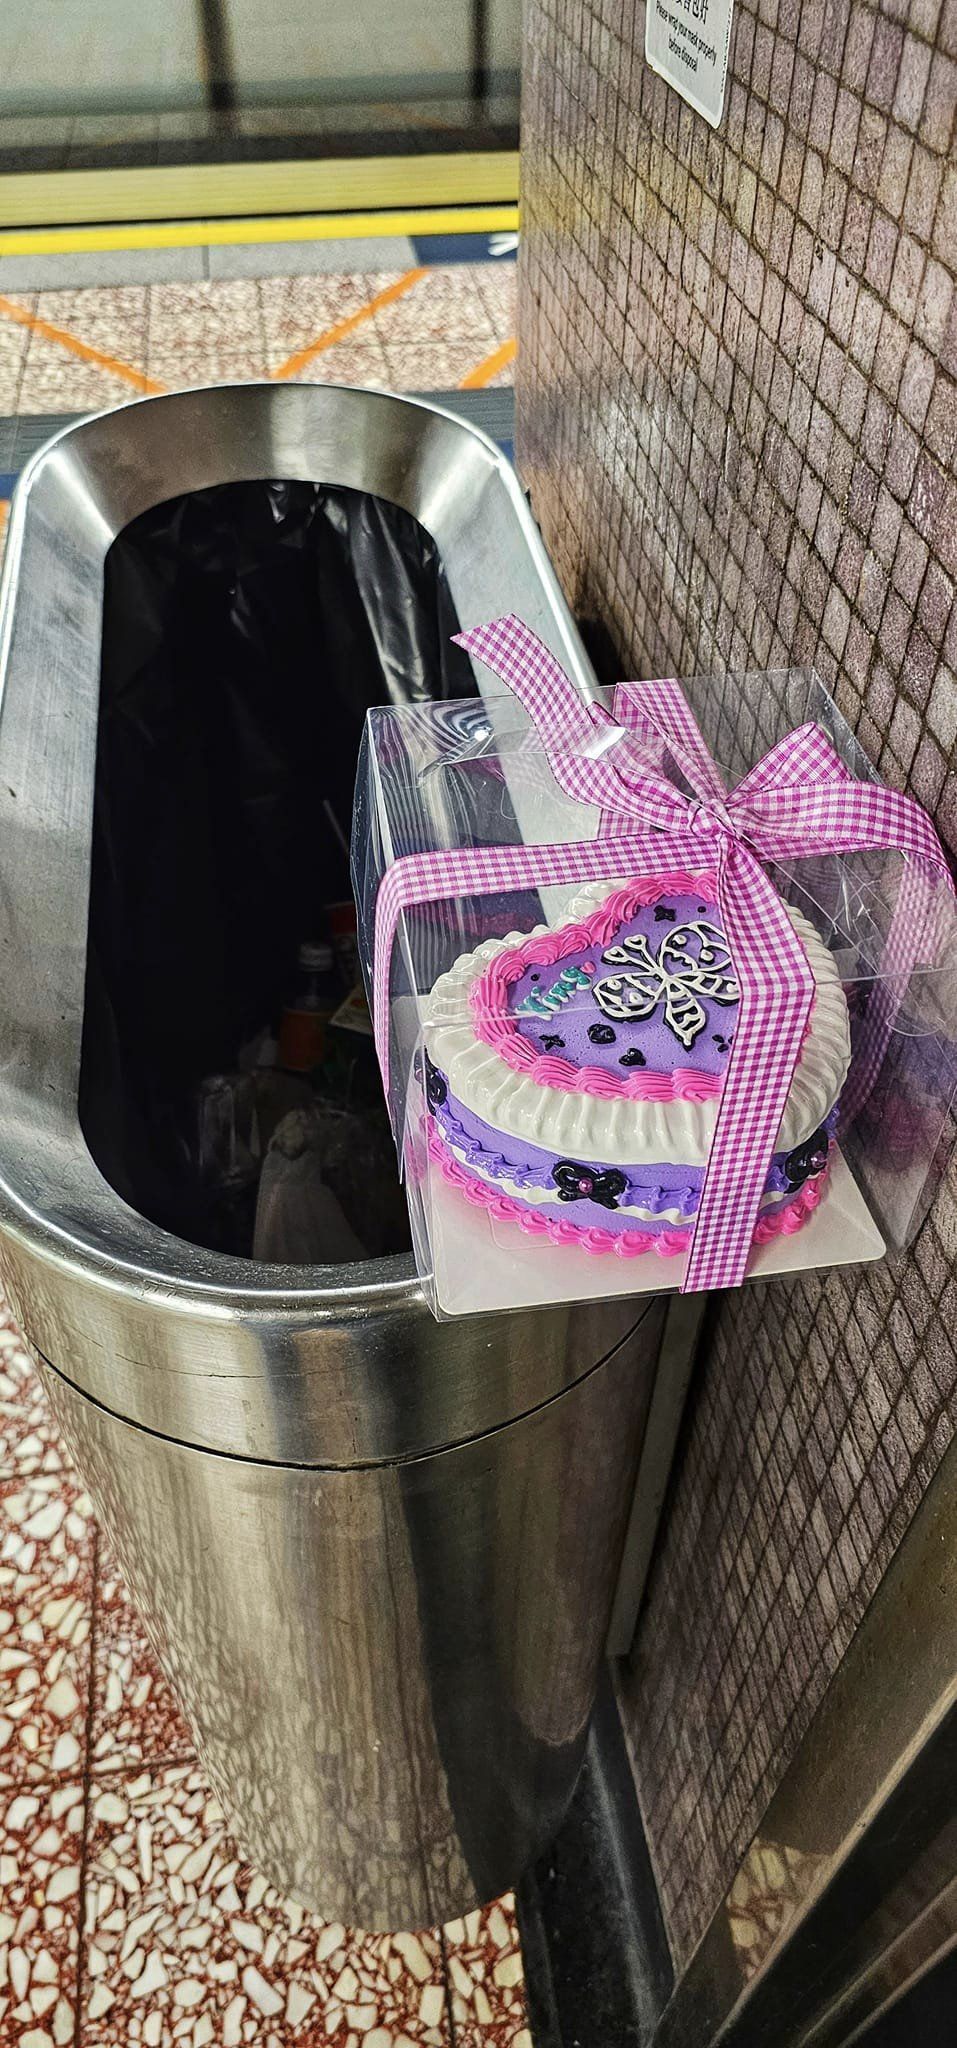 網上流傳一個寫有「Ying」字的紫色蛋糕，被棄於港鐵月台垃圾桶邊緣的相片。網圖